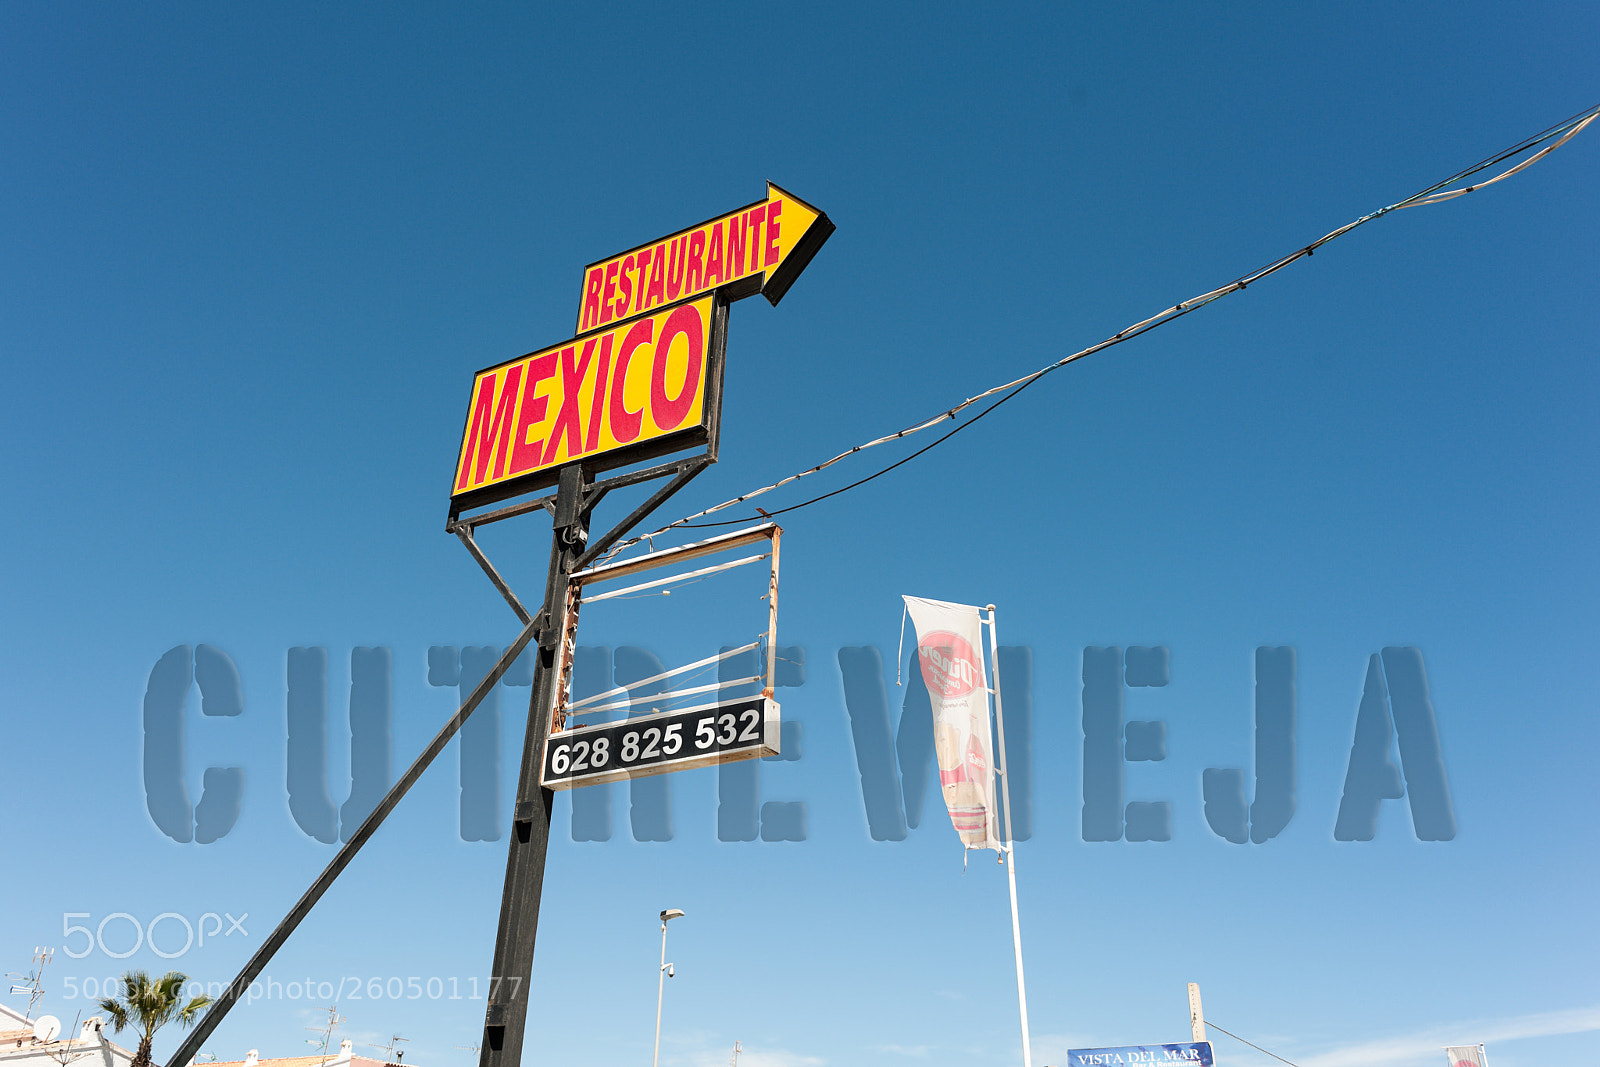 Nikon D700 sample photo. Cutrevieja "restaurante mexico" photography